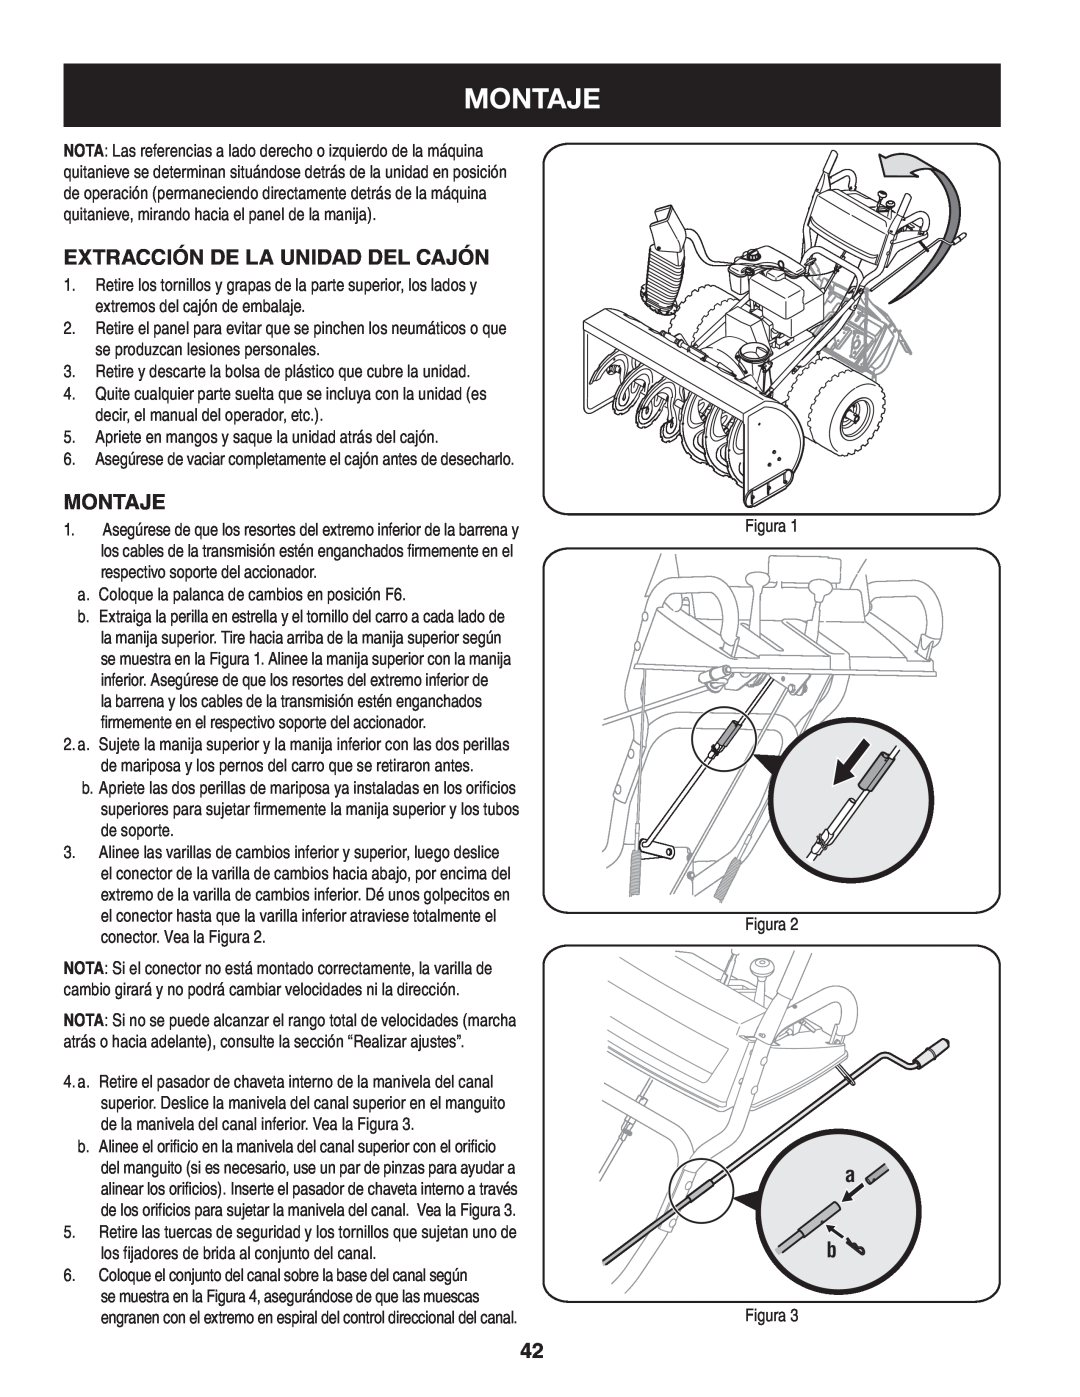 Craftsman 247.88045 manual Montaje, Extracción de la unidad del cajón, montaje 